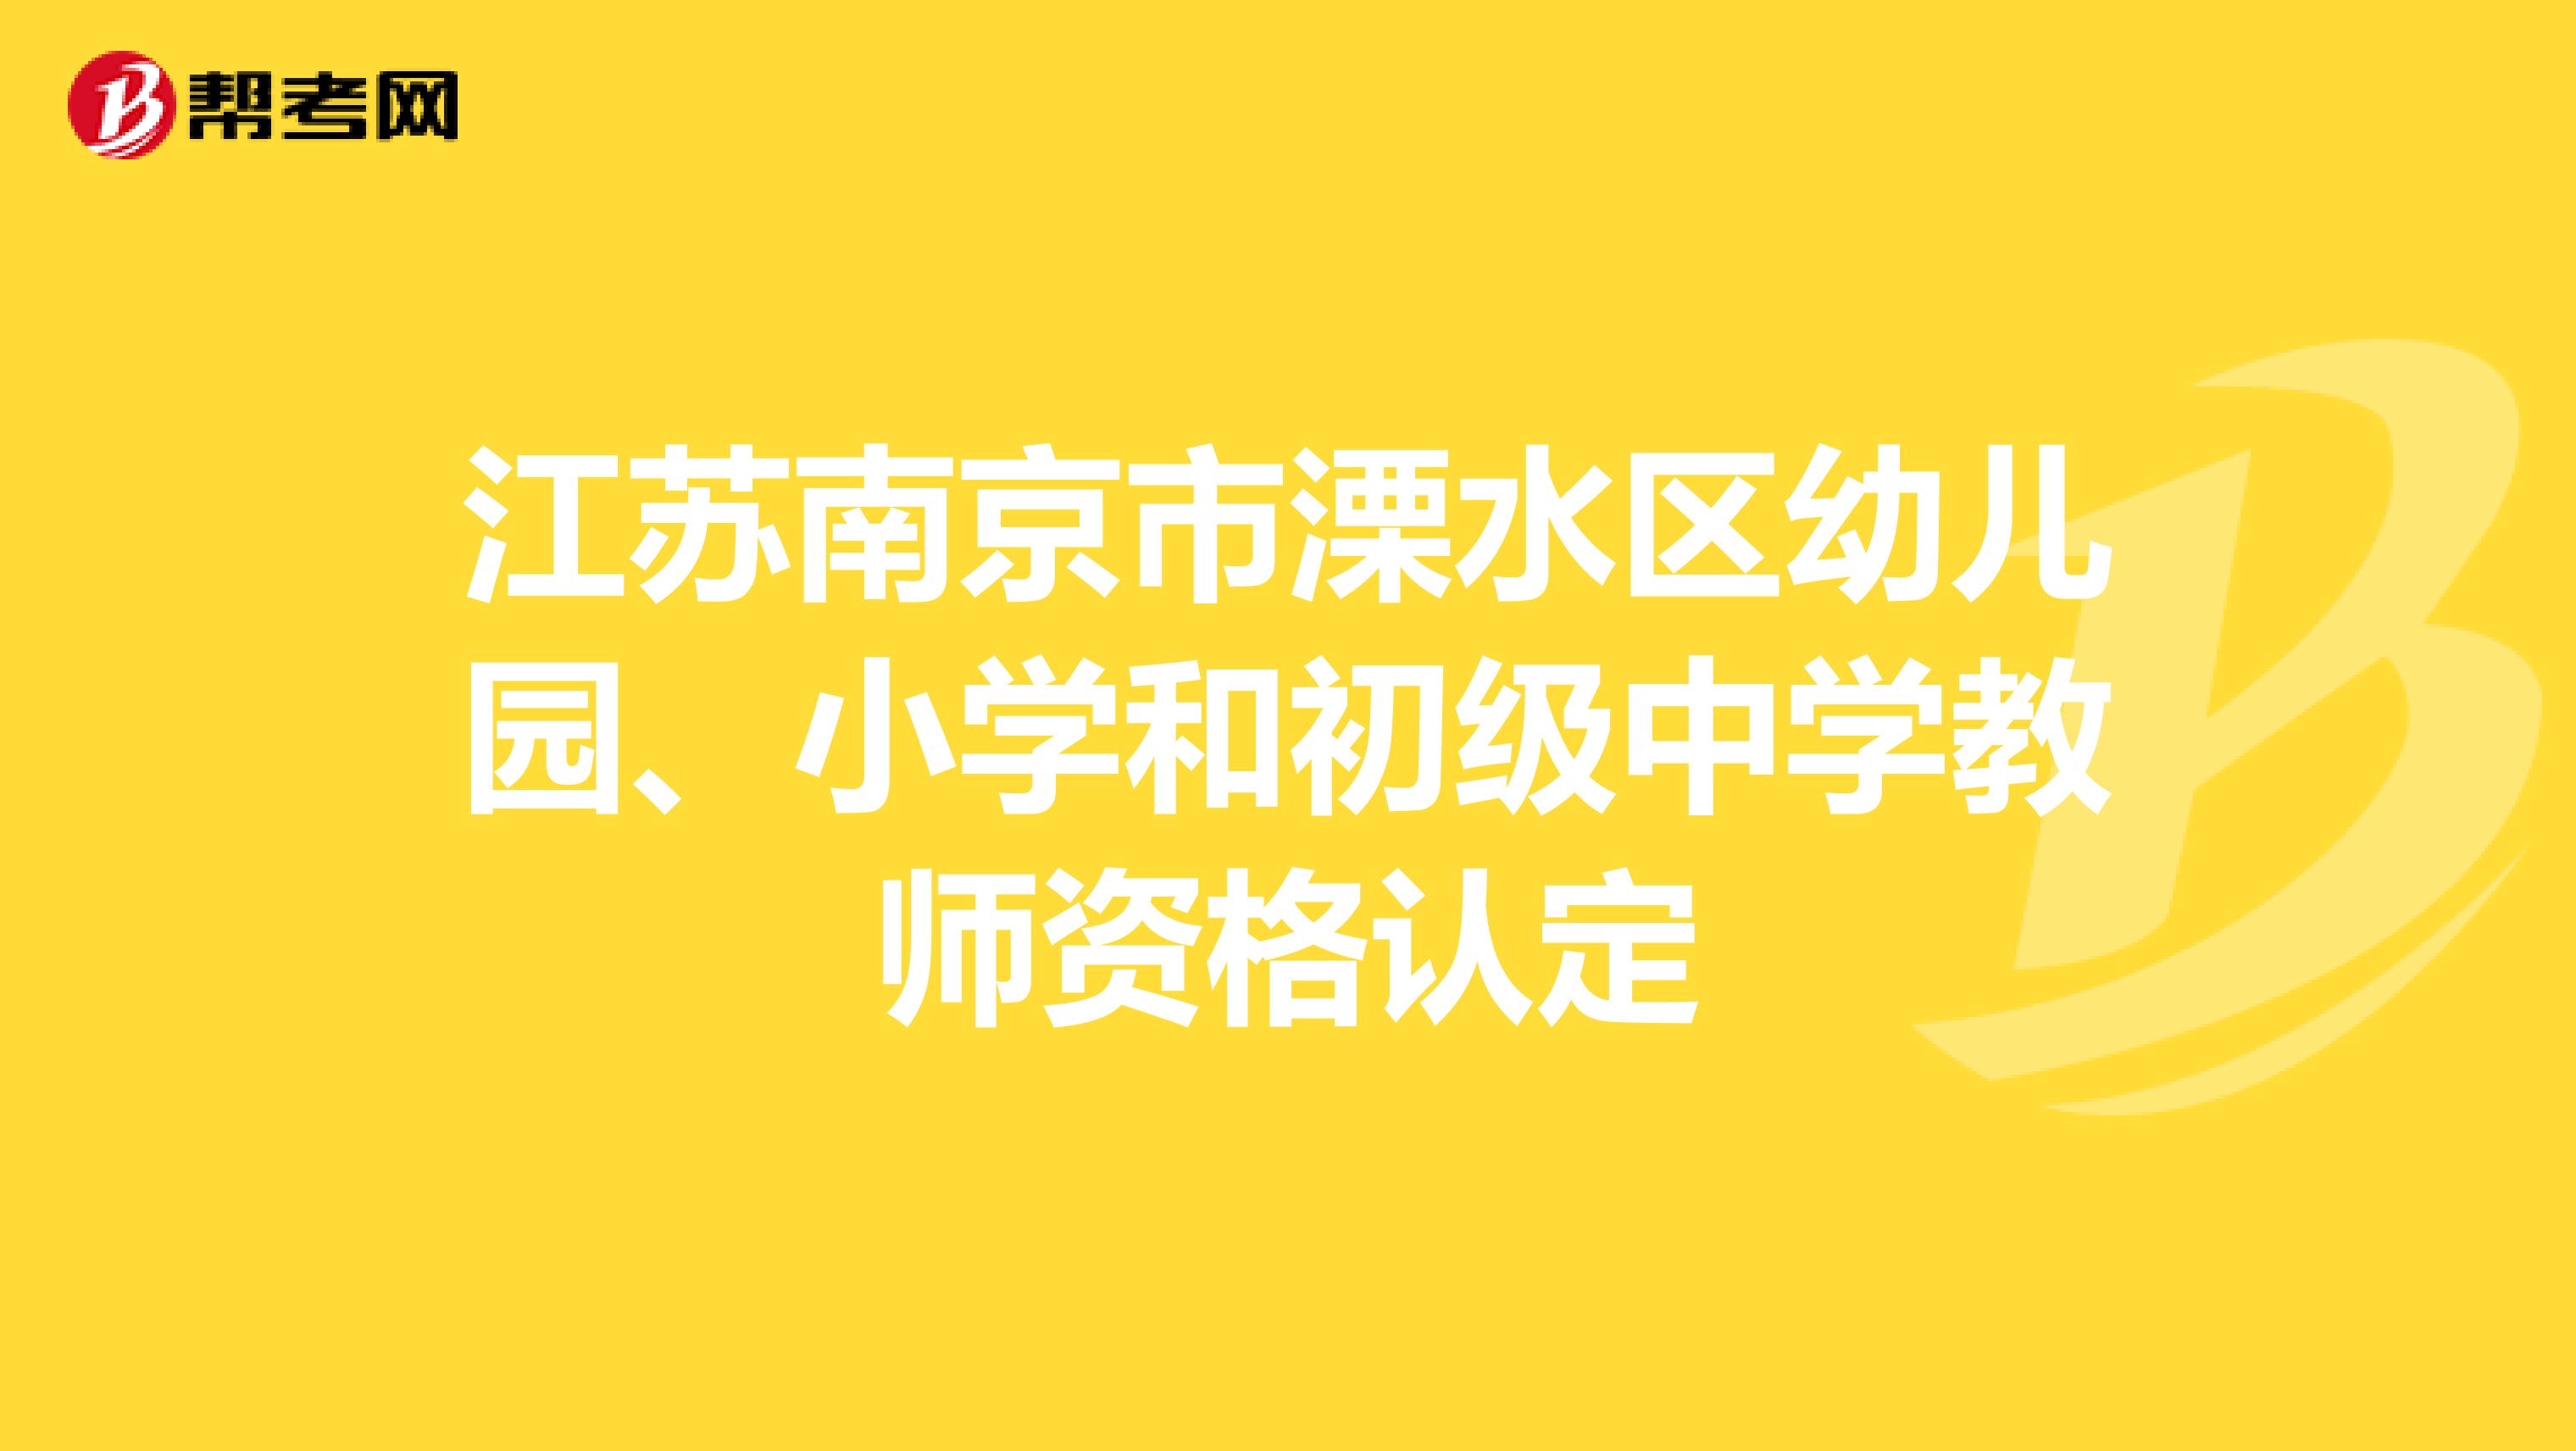 江苏南京市溧水区幼儿园、小学和初级中学教师资格认定